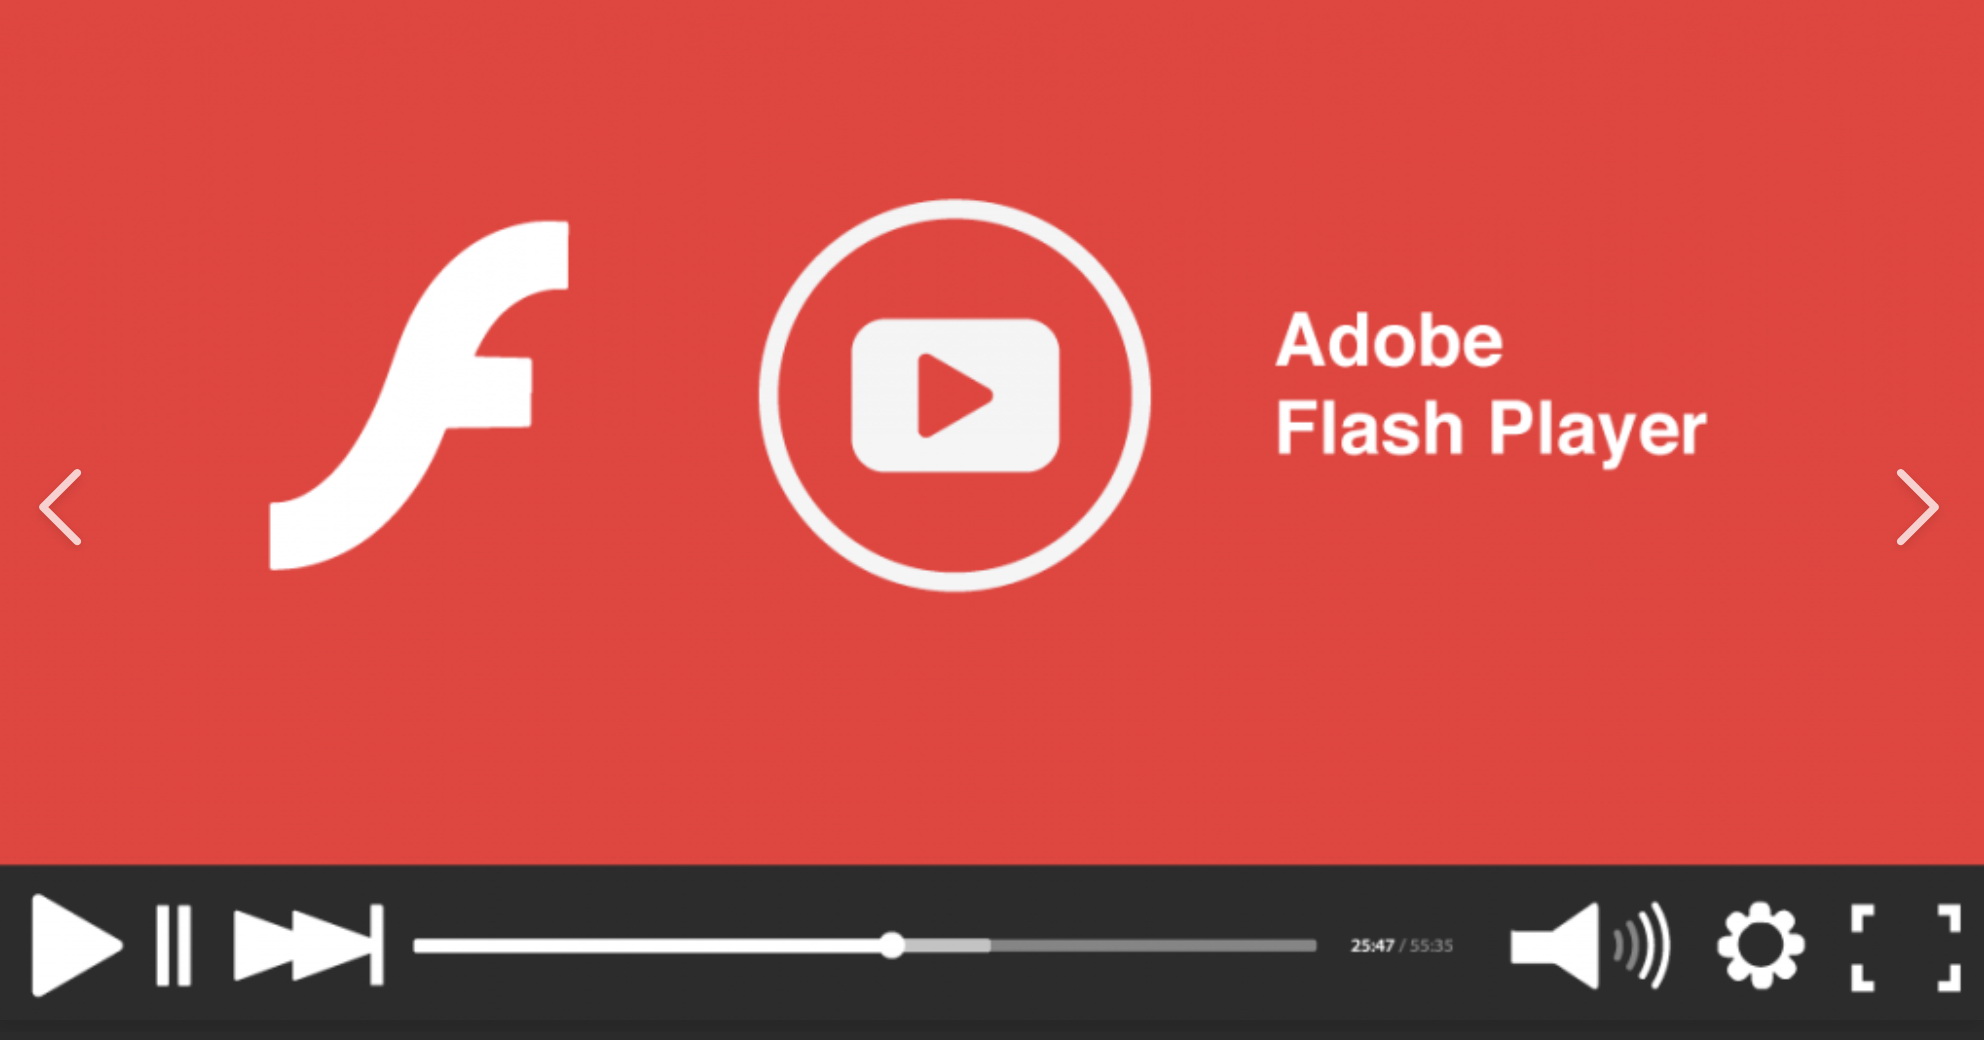 Бесплатные flash плееры. Adobe Flash Player. Адоб флеш плеер. Логотип флеш плеер. Фото флеш плеер.